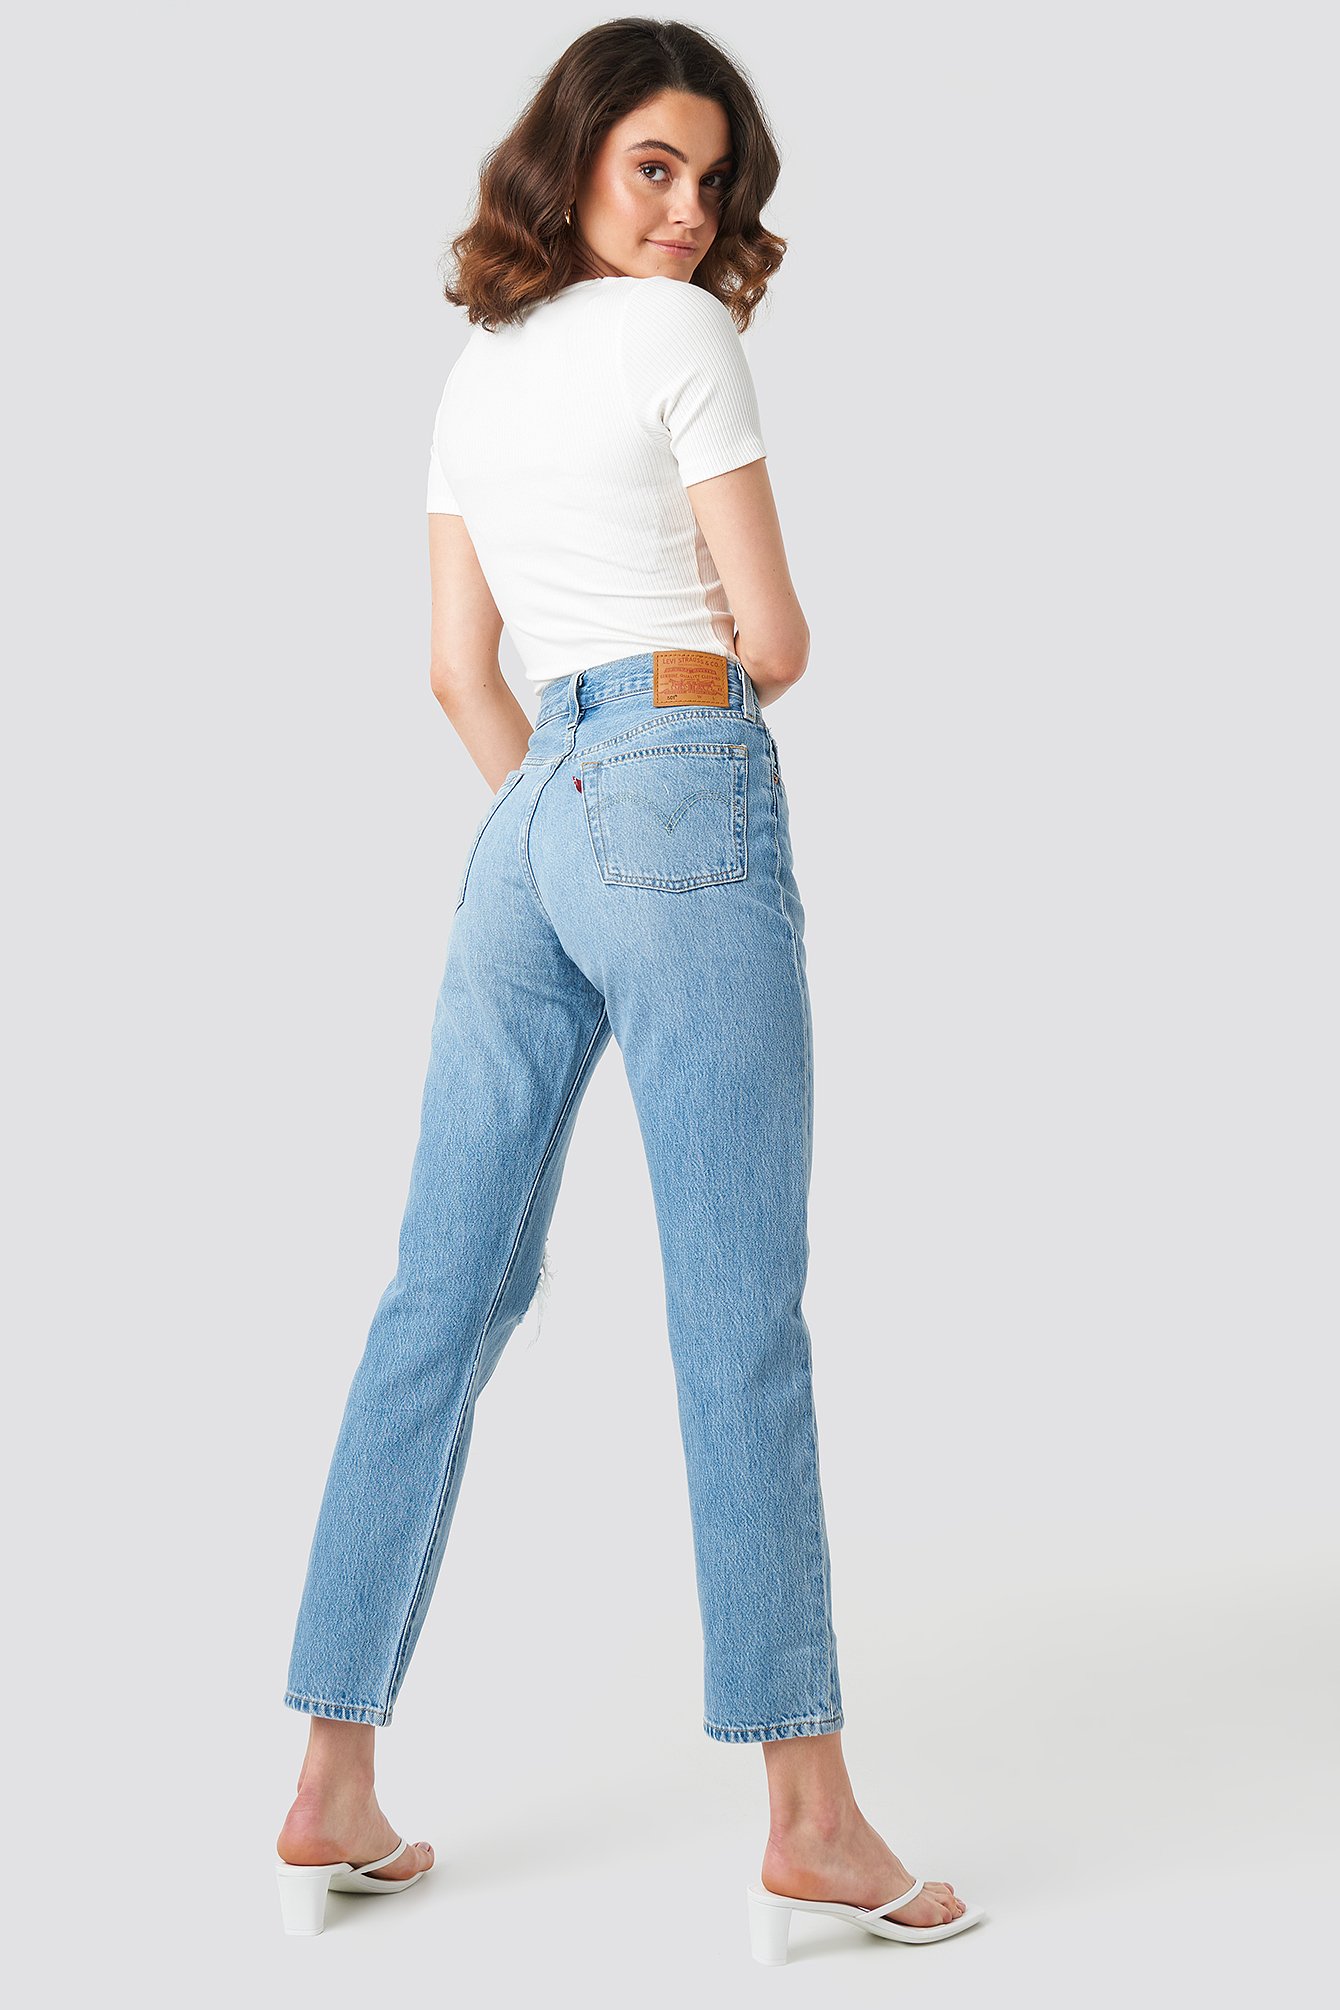 levi crop jeans